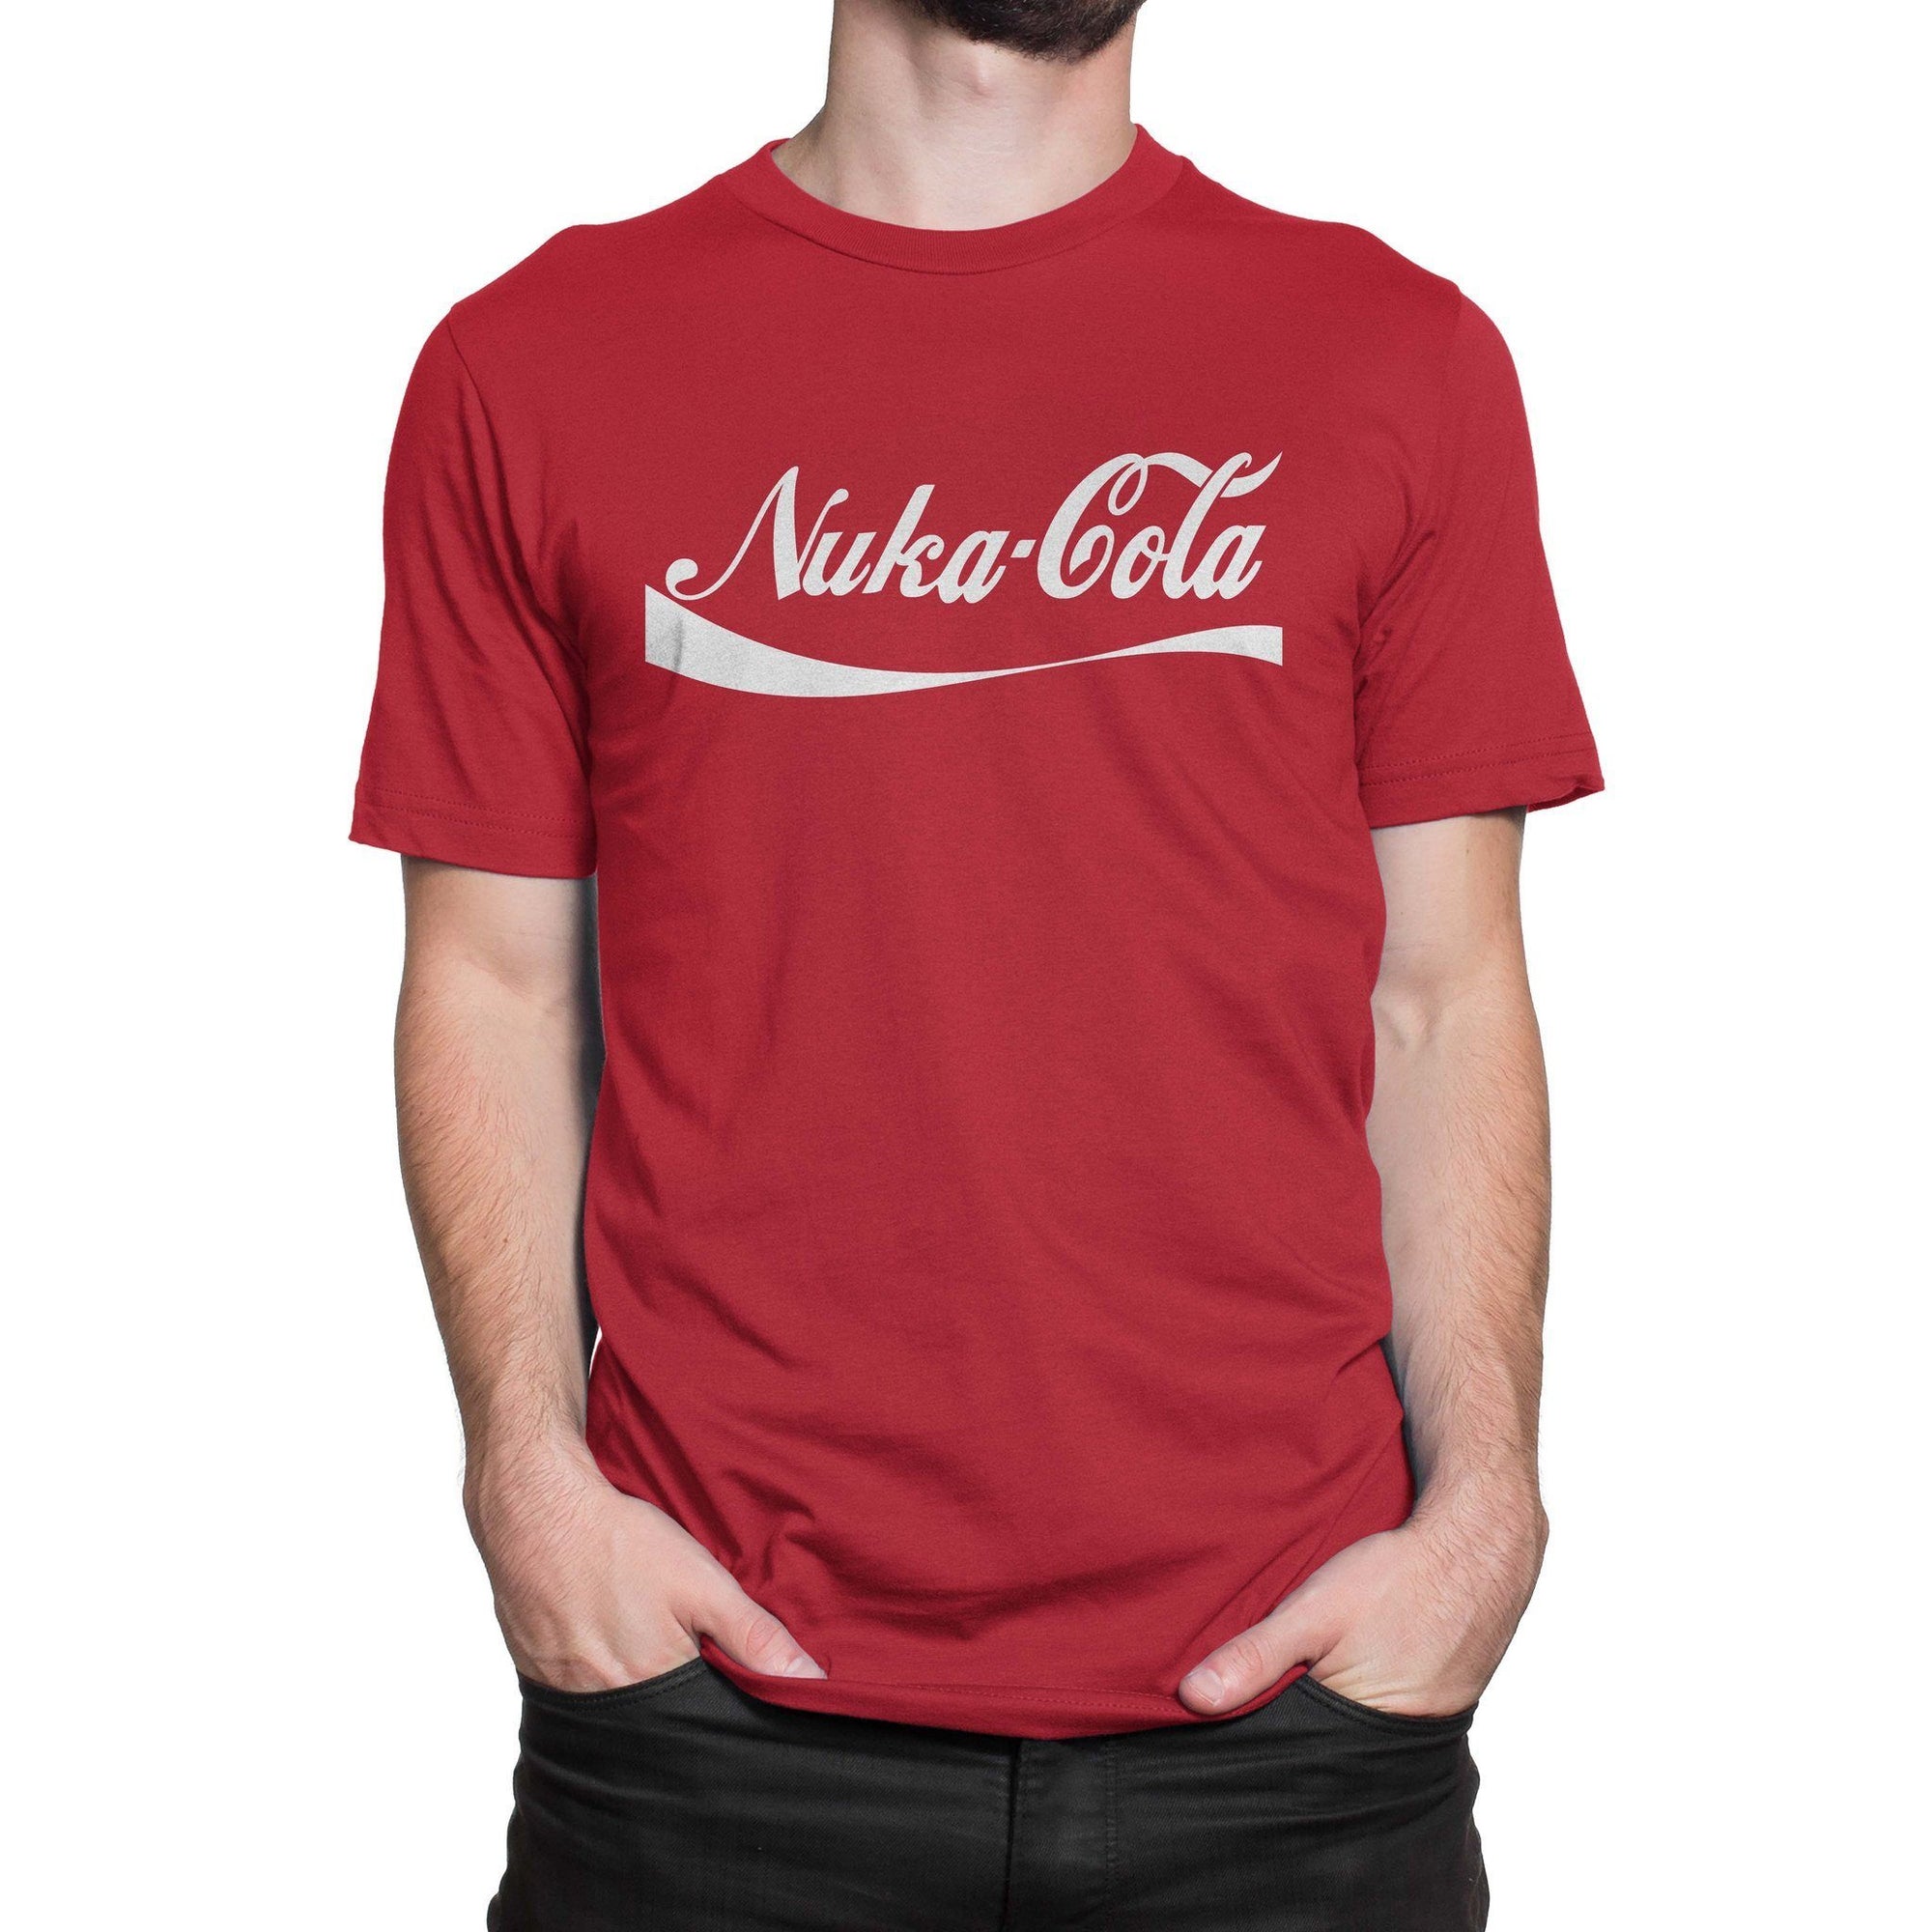 Nuka Cola Shirt-T-Shirts-Shirtasaurus-Shirtasaurus